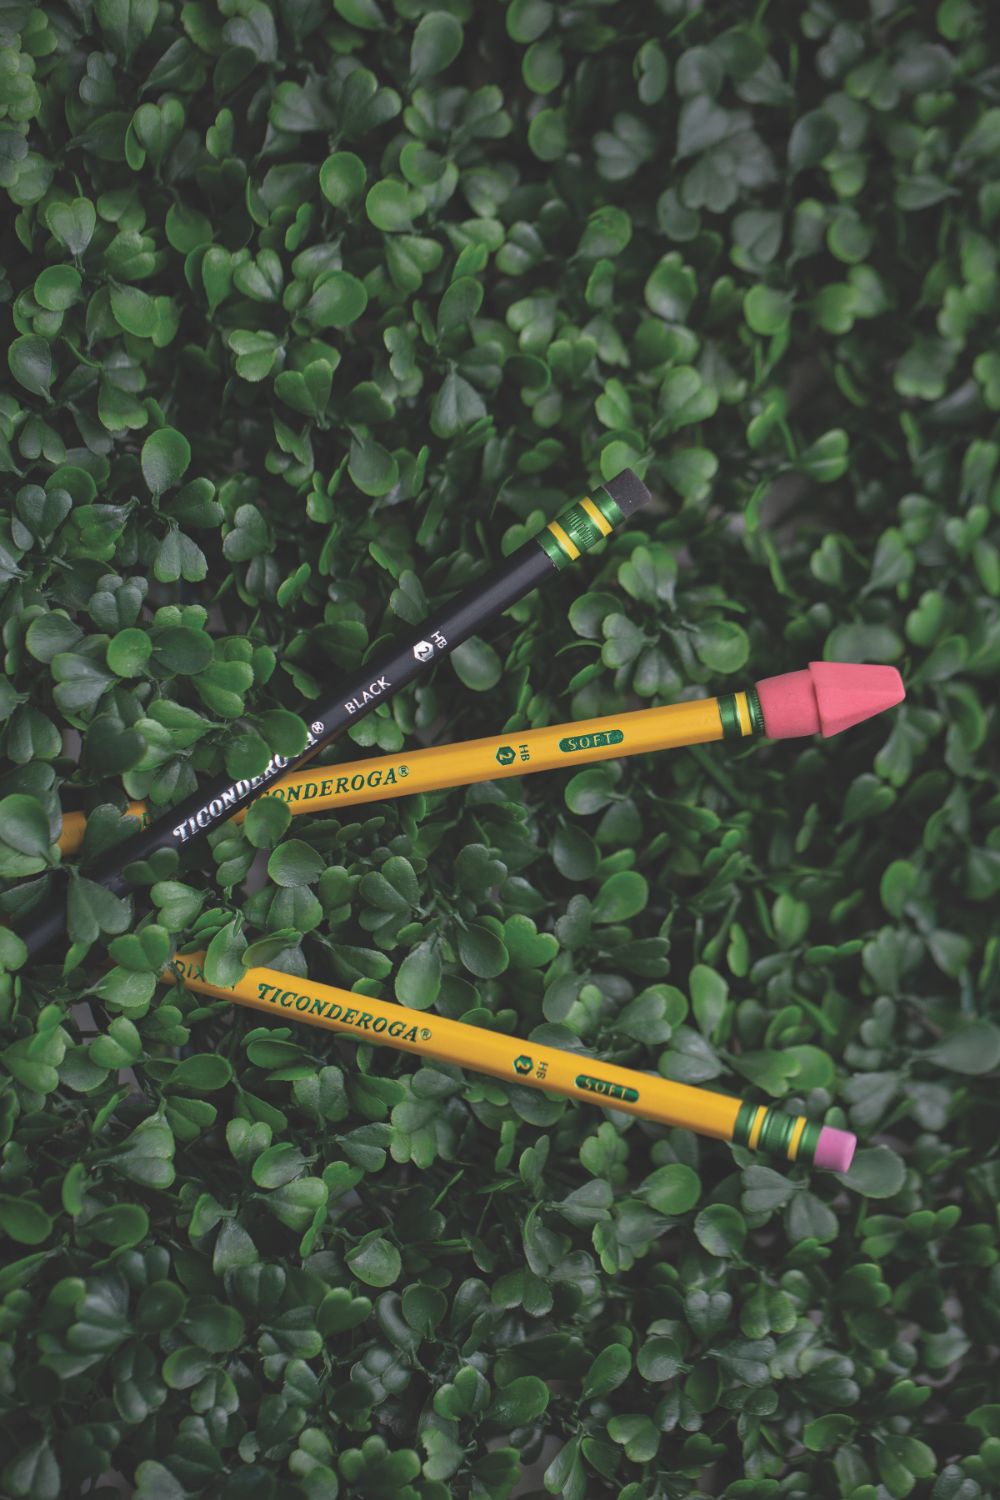 Ticonderoga Sharpened Pencils #2 HB Premium Wood Latex-Free Eraser